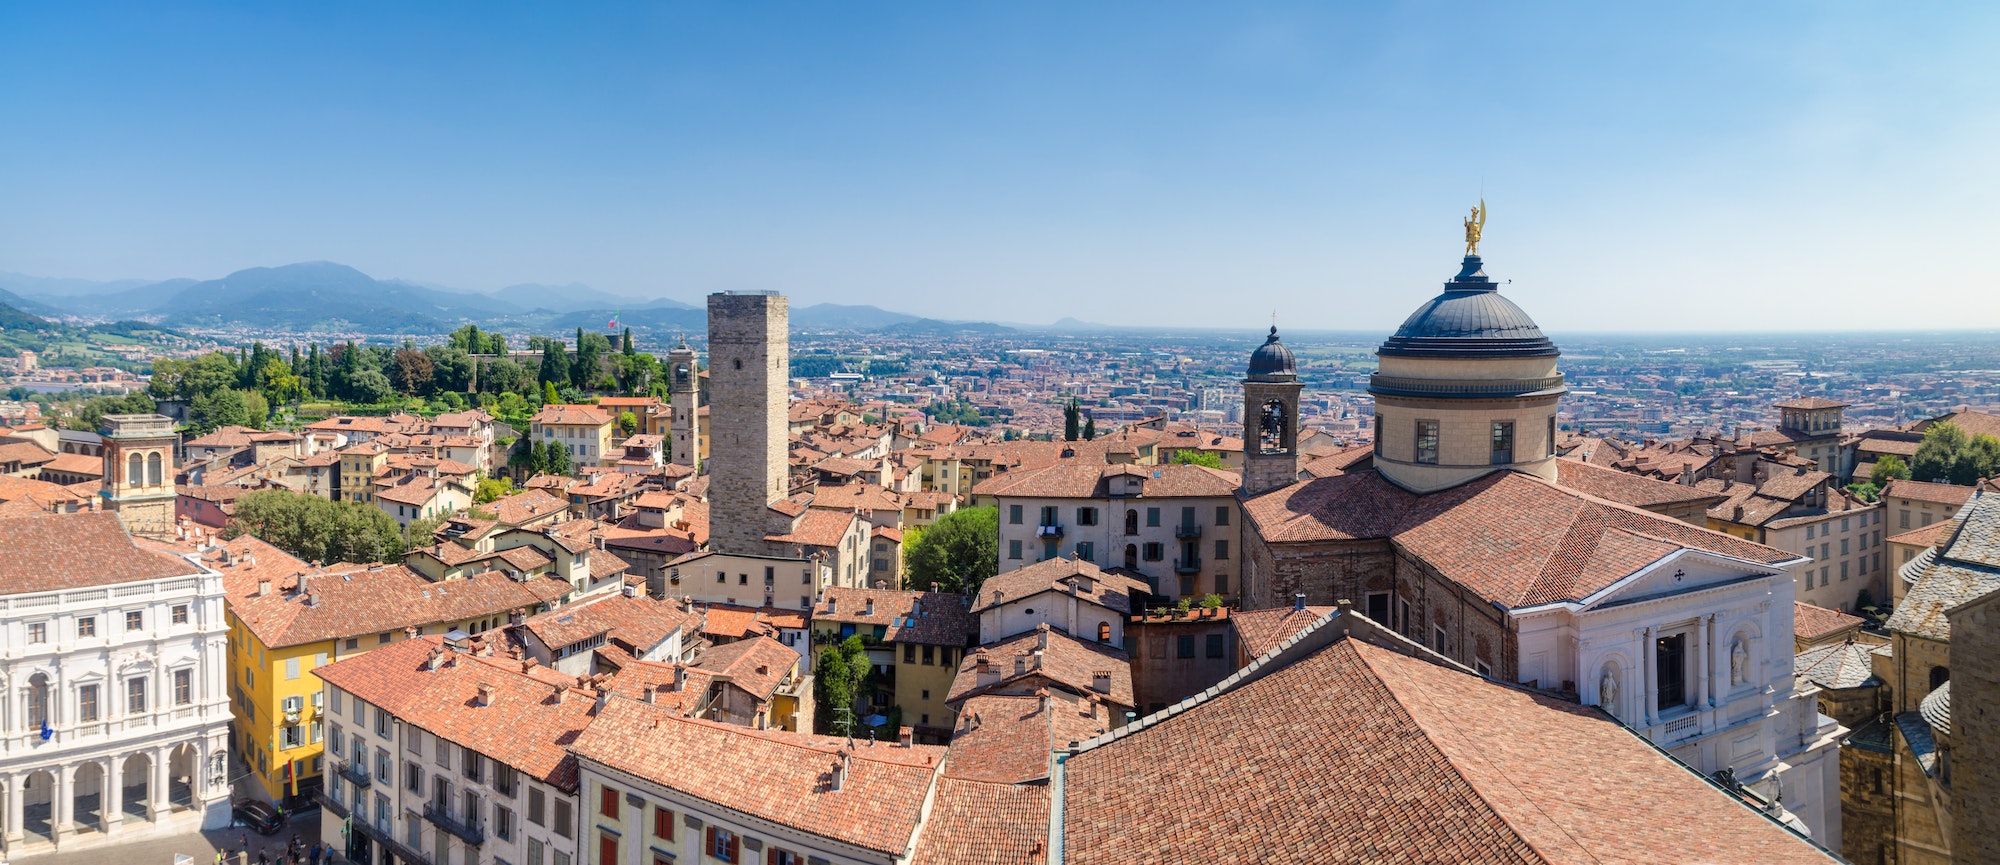 The Old City of Bergamo